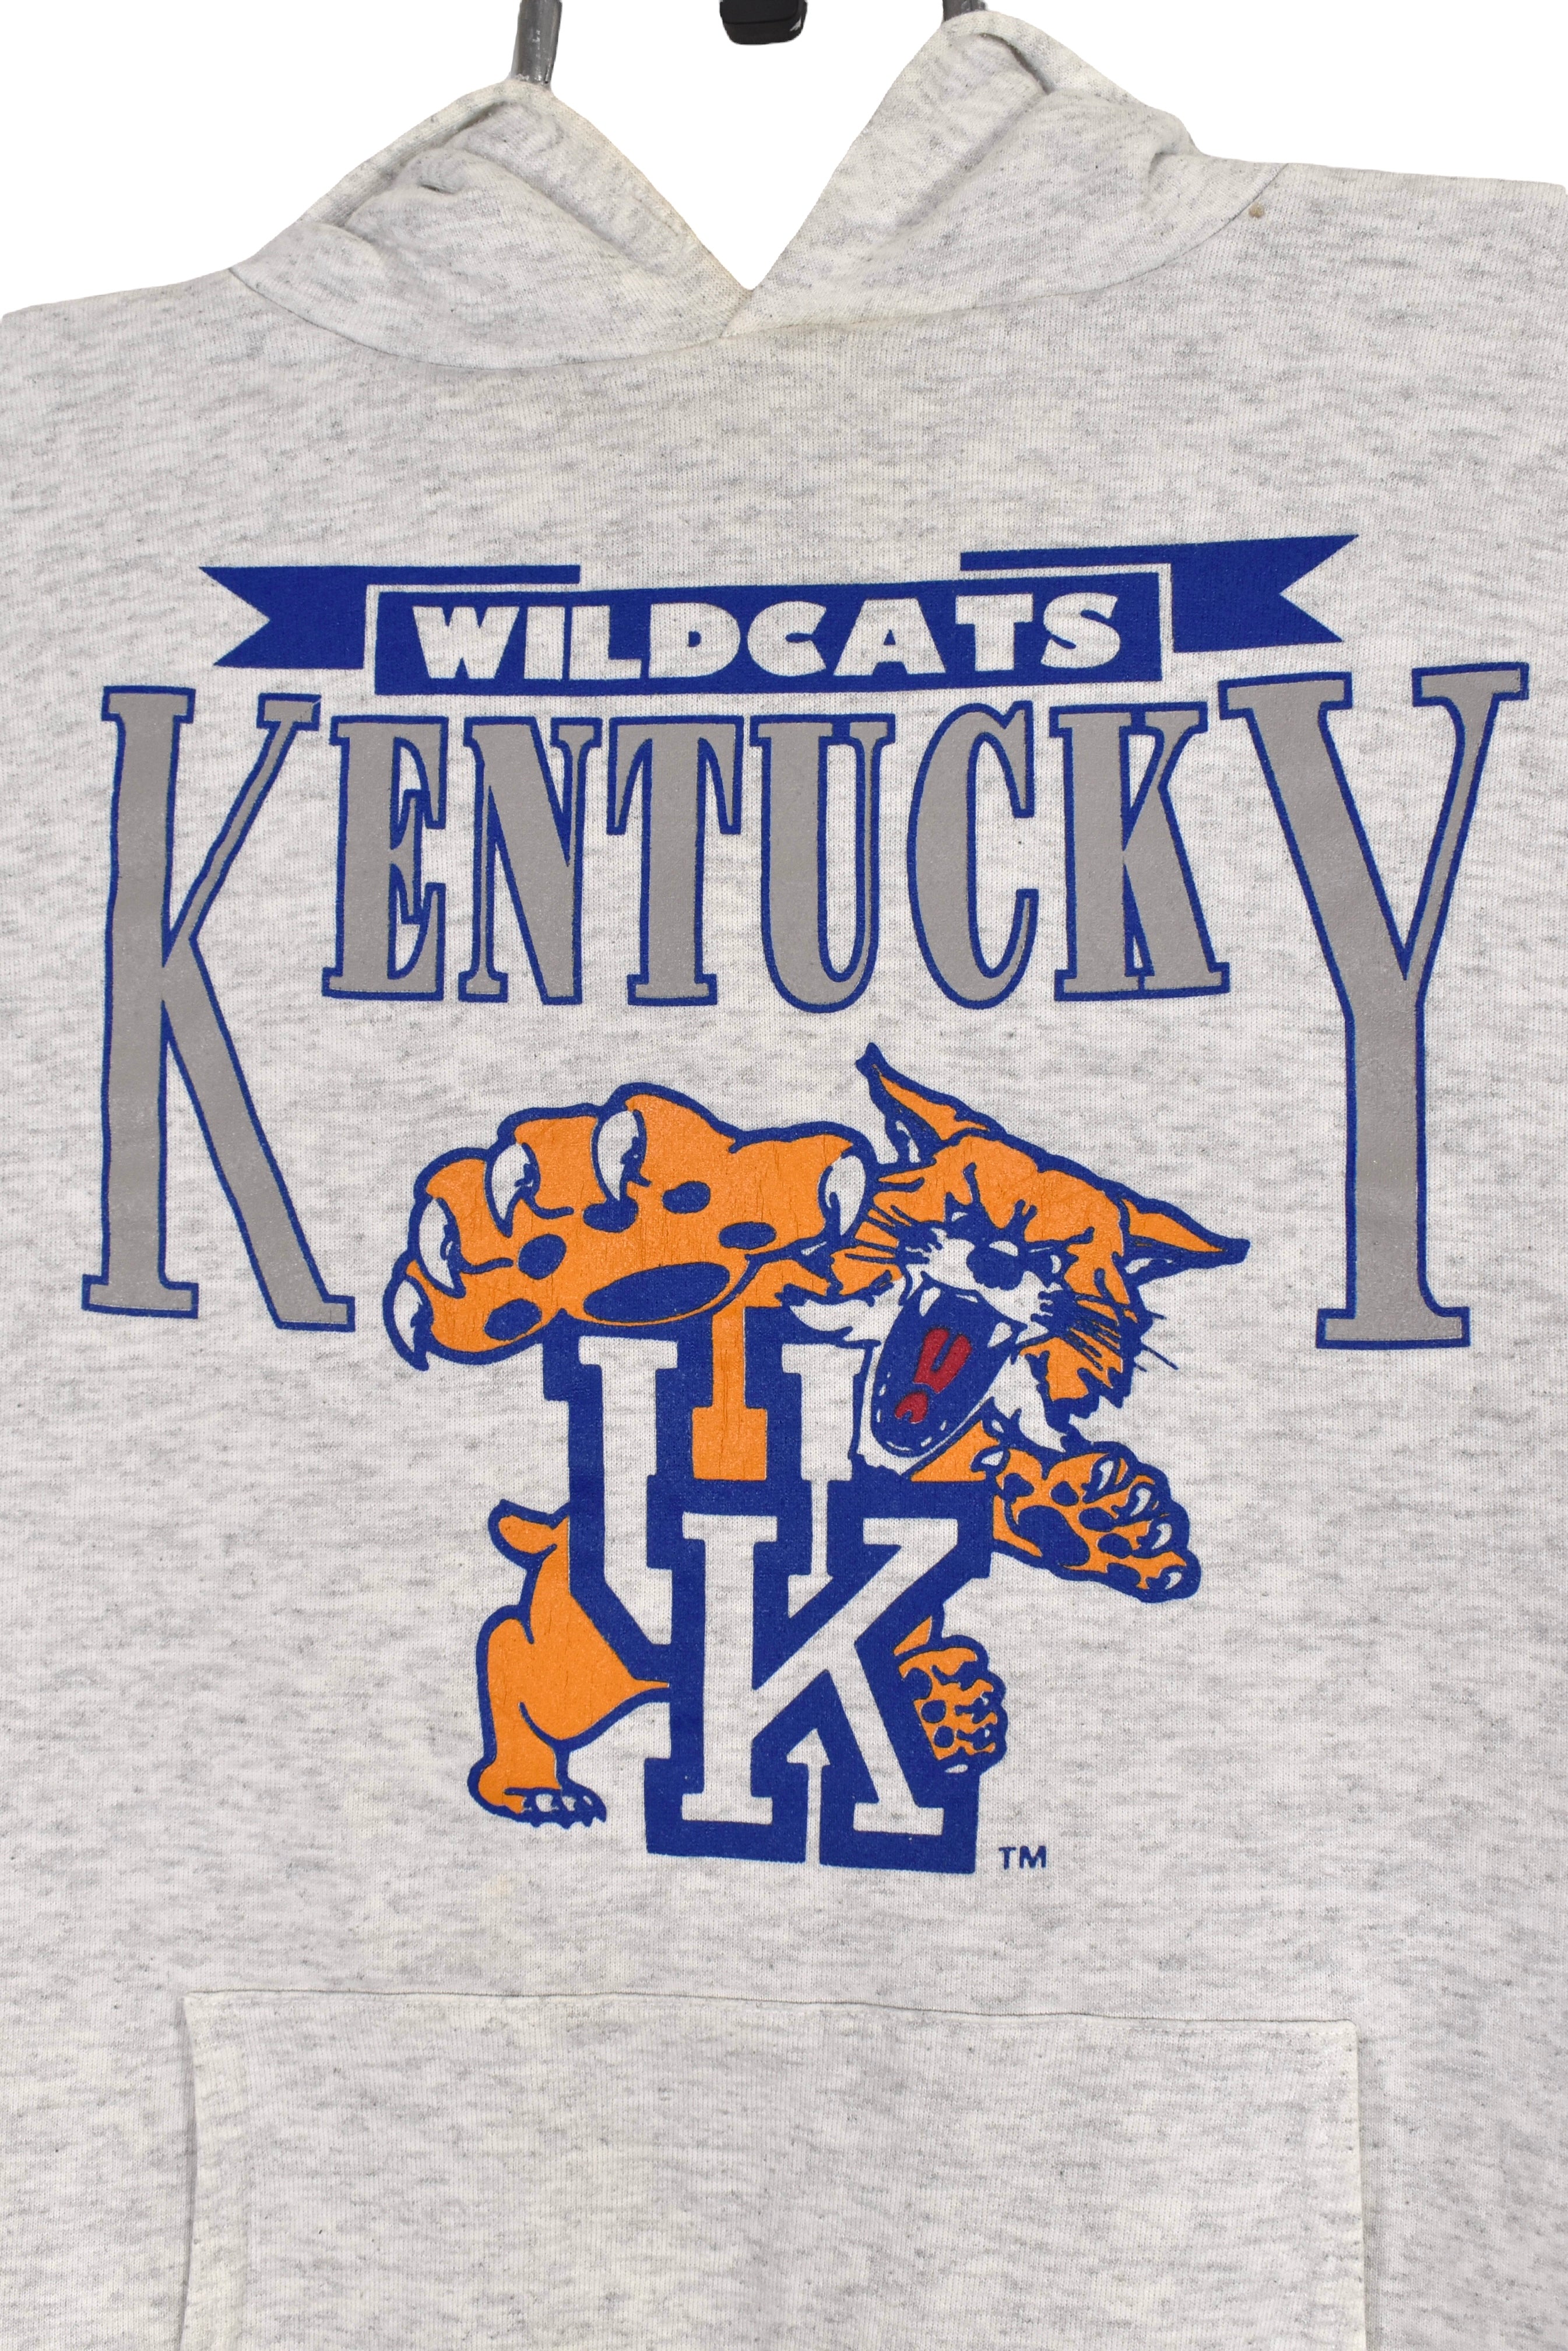 Vintage University of Kentucky hoodie (S), grey Wildcats sweatshirt